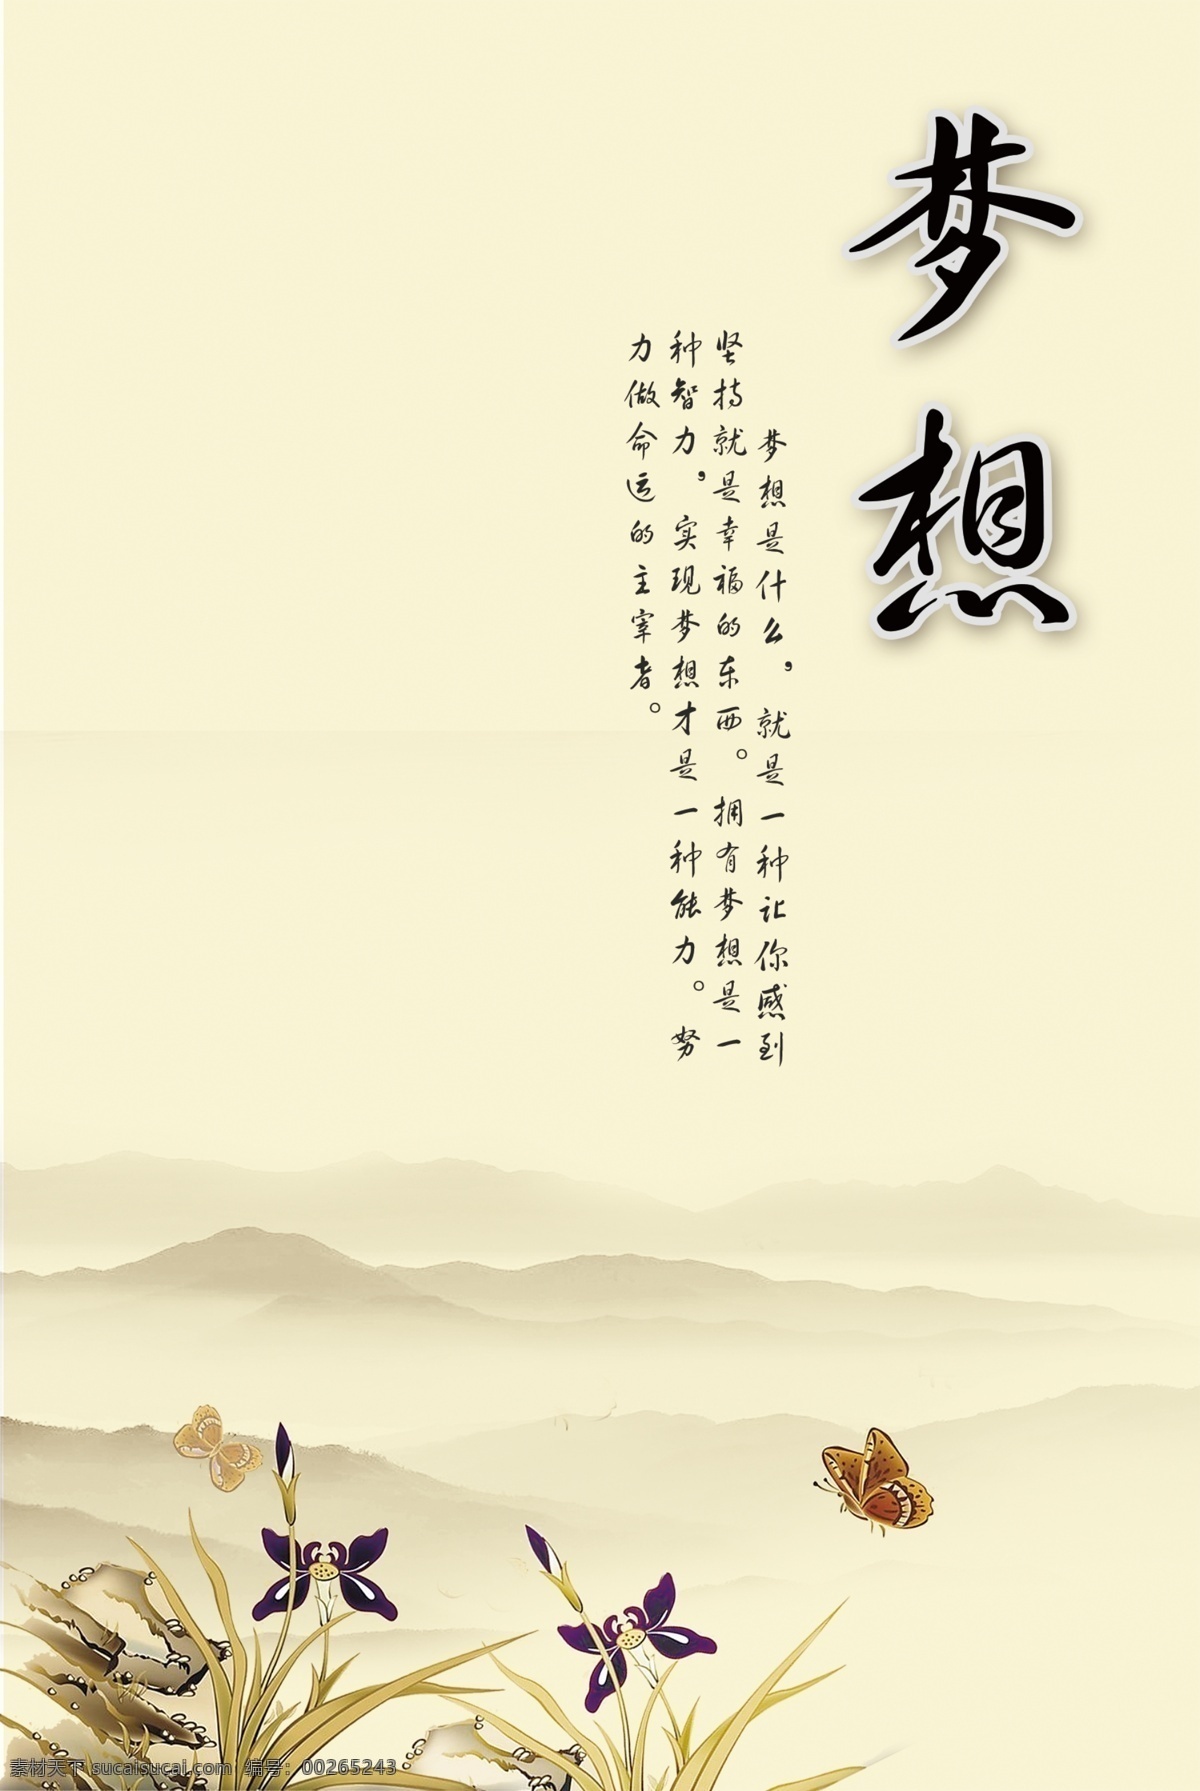 梦想 企业 文化 海报 励志 企业文化 中国风 水墨